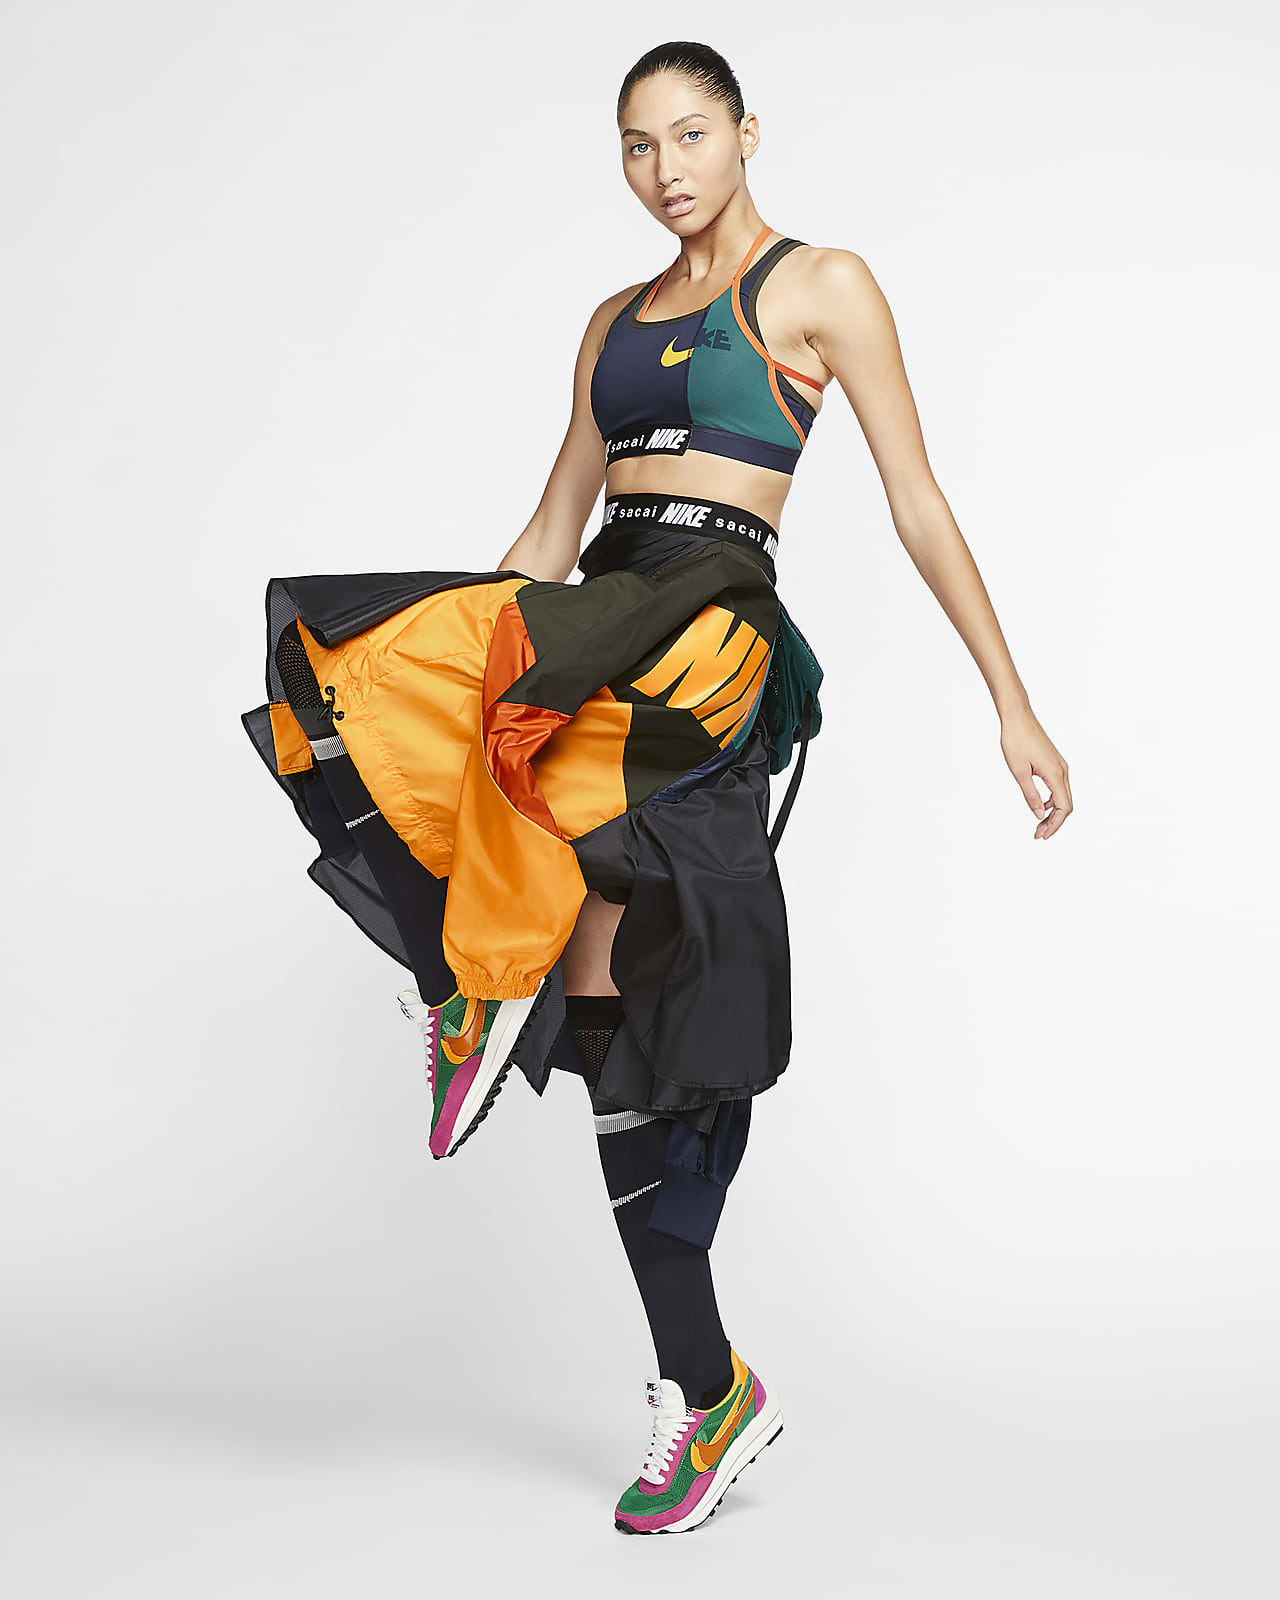 Nike x sacai Women's Skirt. Nike ID